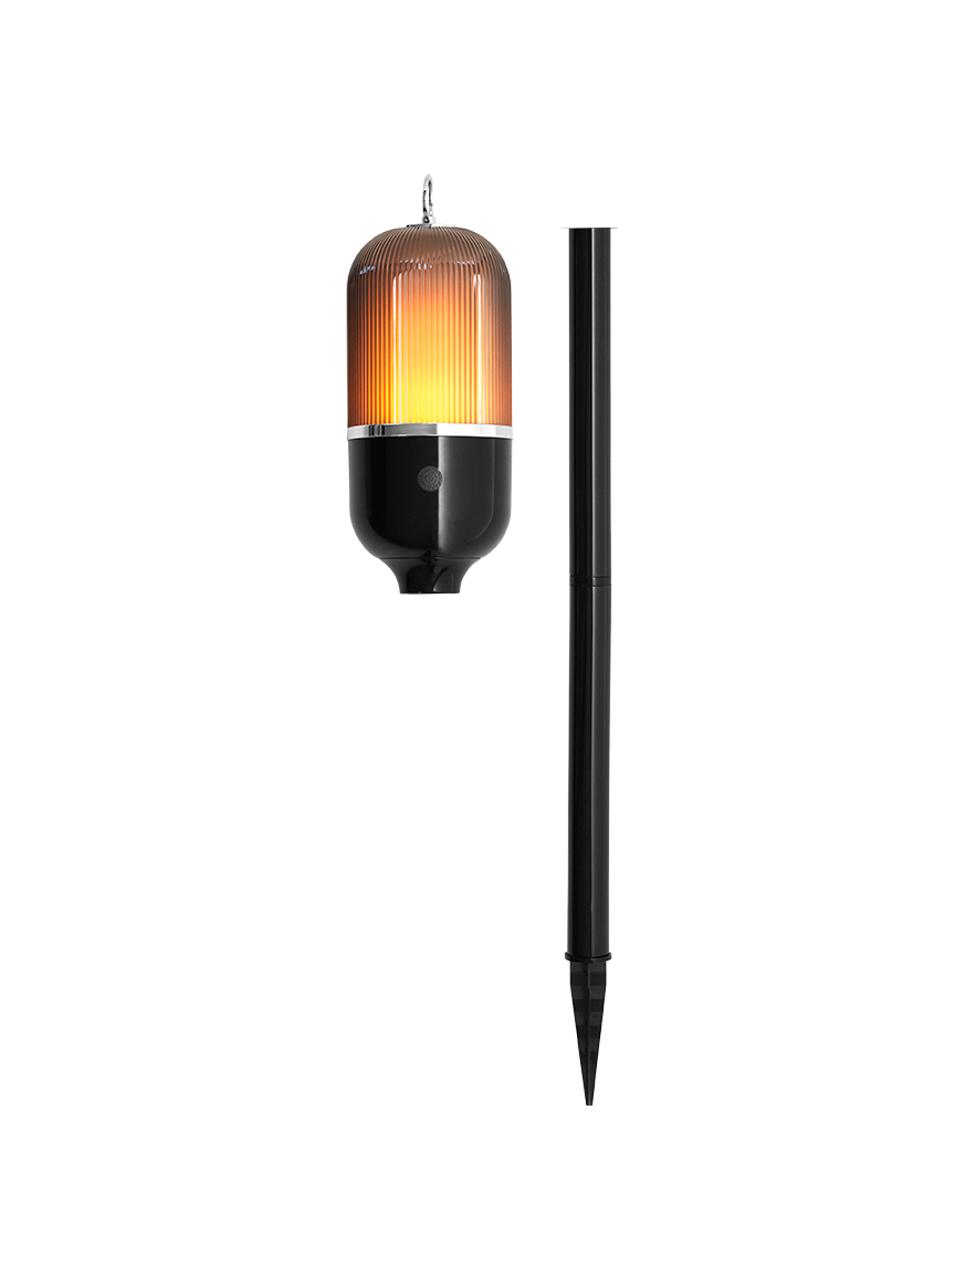 Außenleuchte New Flame für Boden, Tisch oder zum Hängen, Lampenfuß: Aluminium, Lampenschirm: Kunststoff, Schwarz, Transparent, Ø 10 x H 88 cm